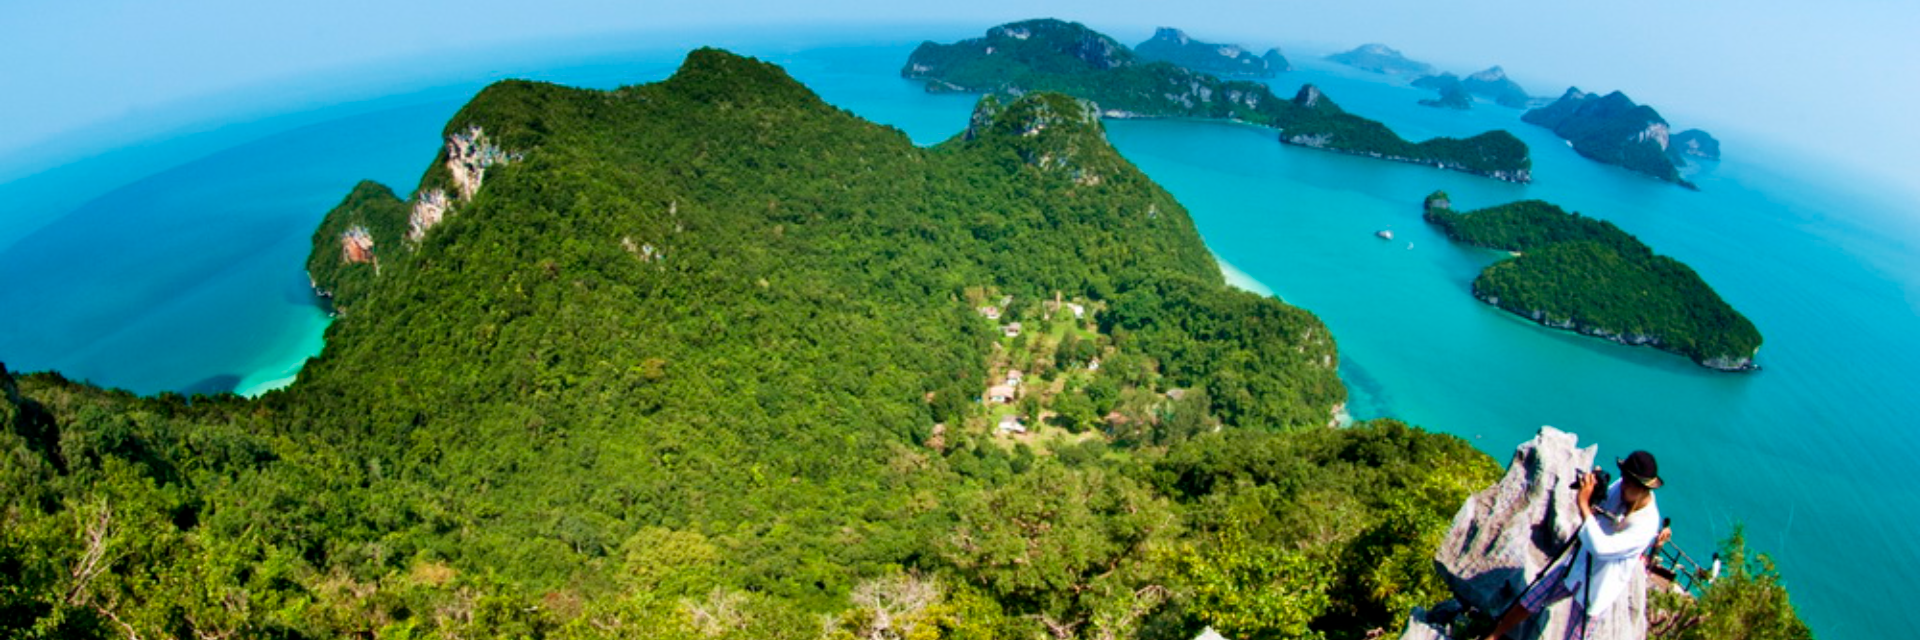 อุทยานแห่งชาติหมู่เกาะอ่างทอง เปิดให้ท่องเที่ยวและพักแรม